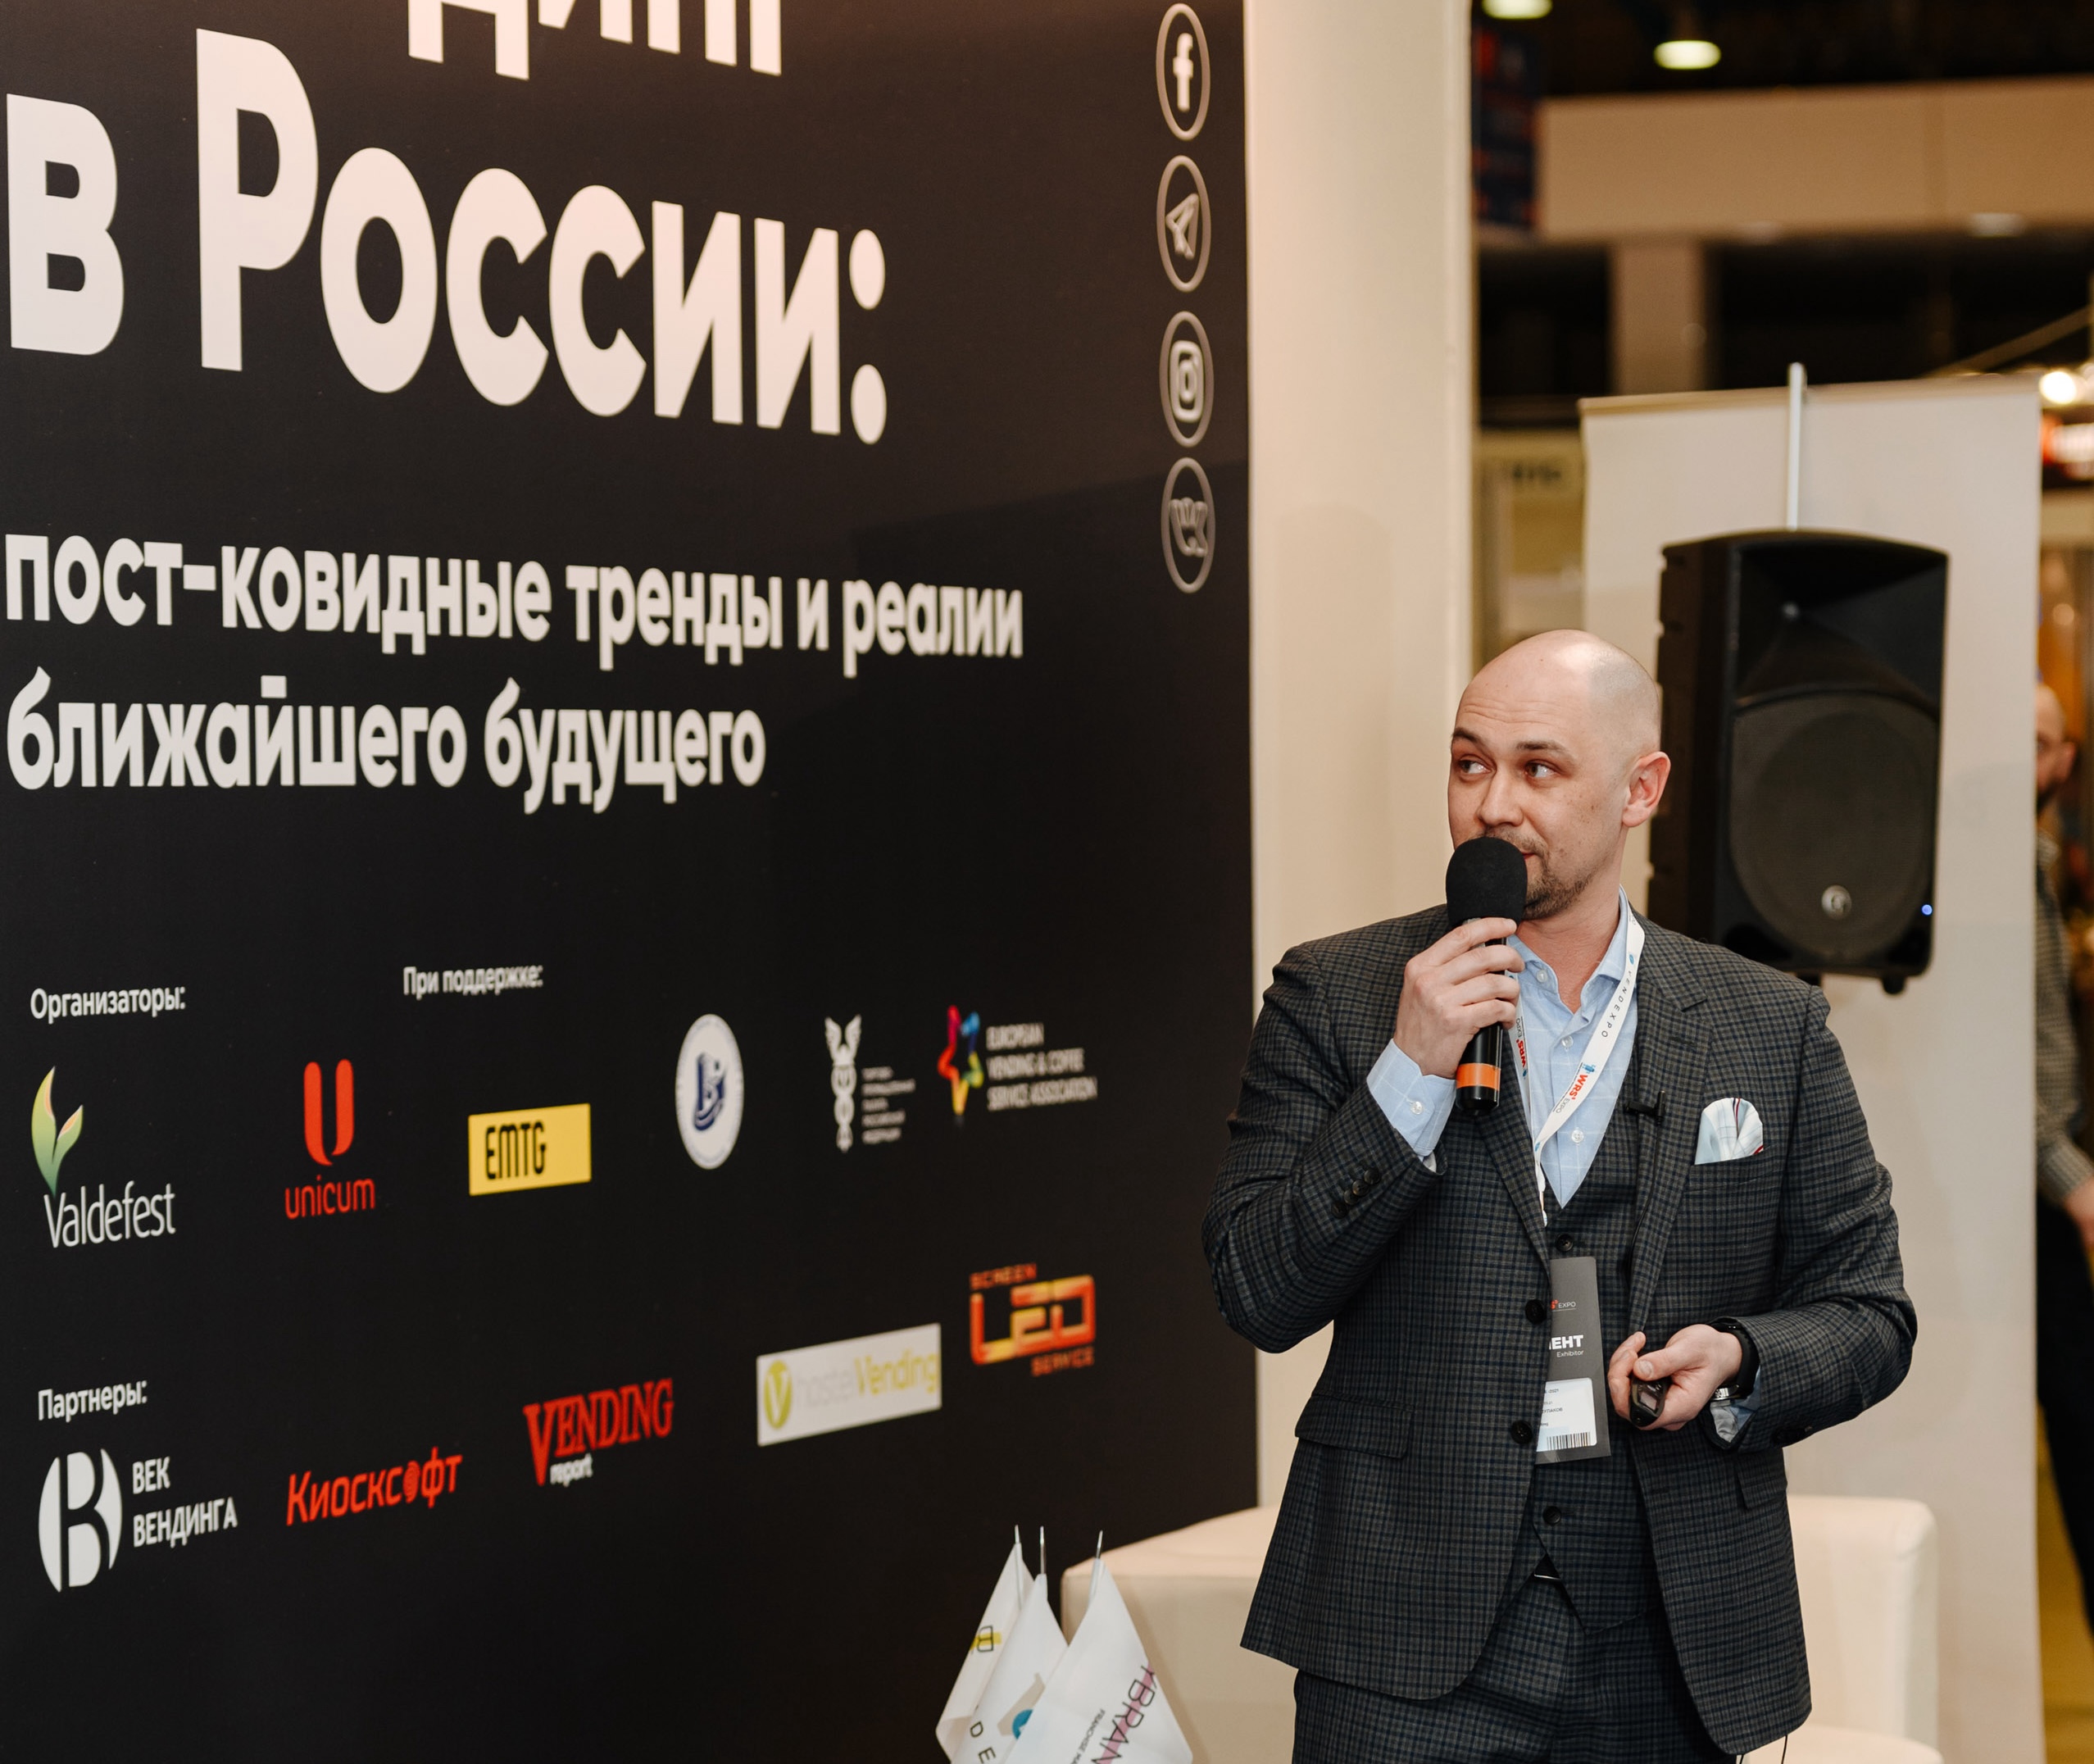 19 марта в 12:25 Александр Шулаков выступит на бизнес-форуме VERSOUS